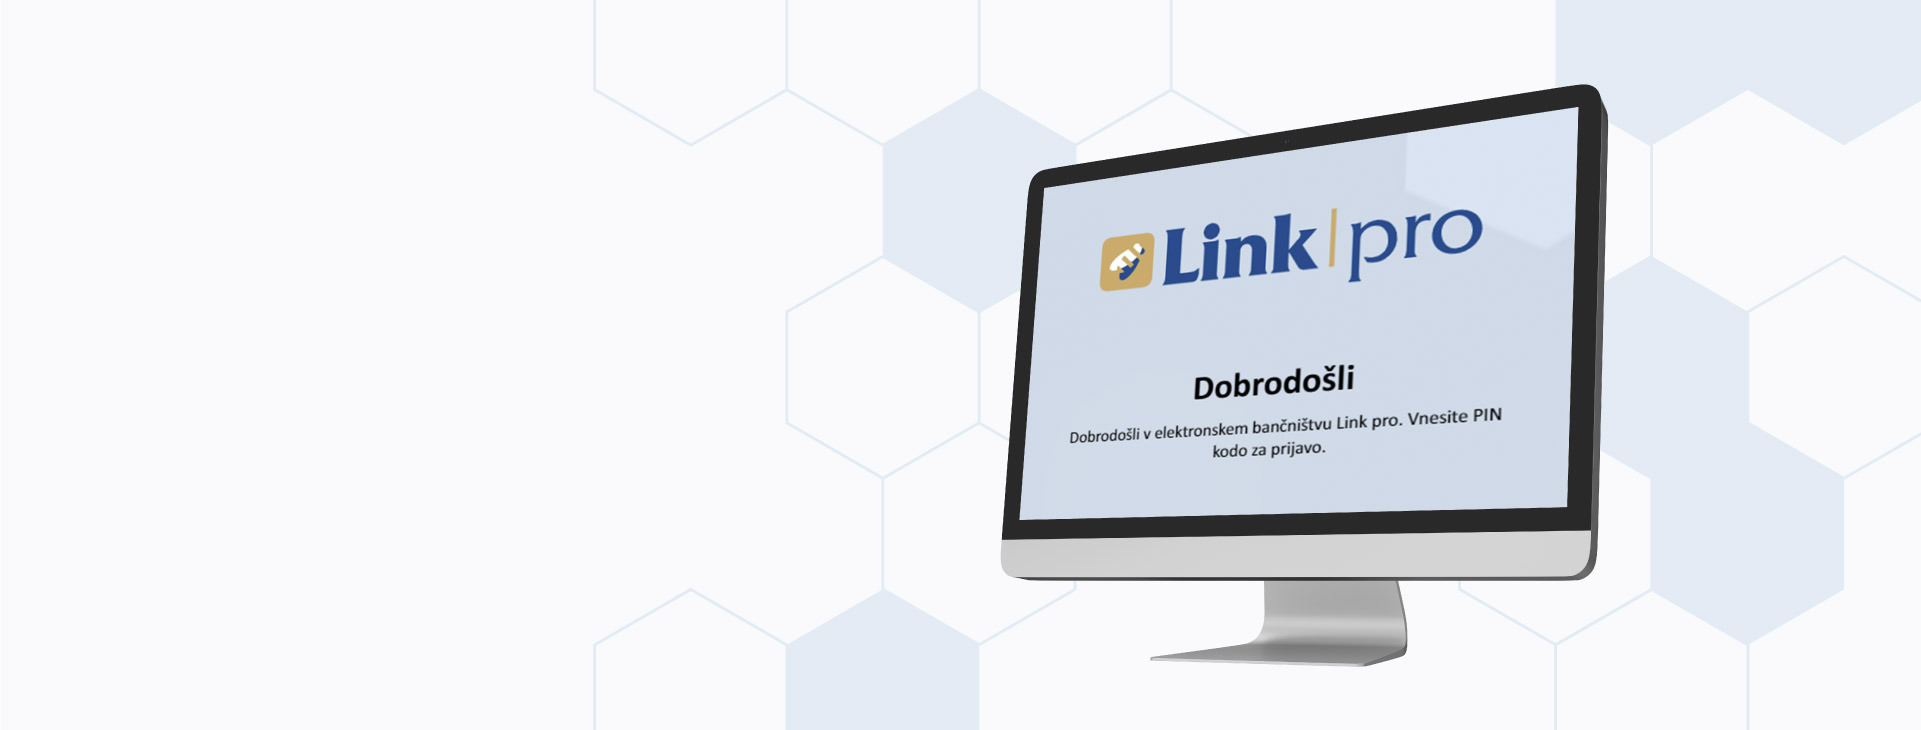 Nova poslovna spletna banka Link pro